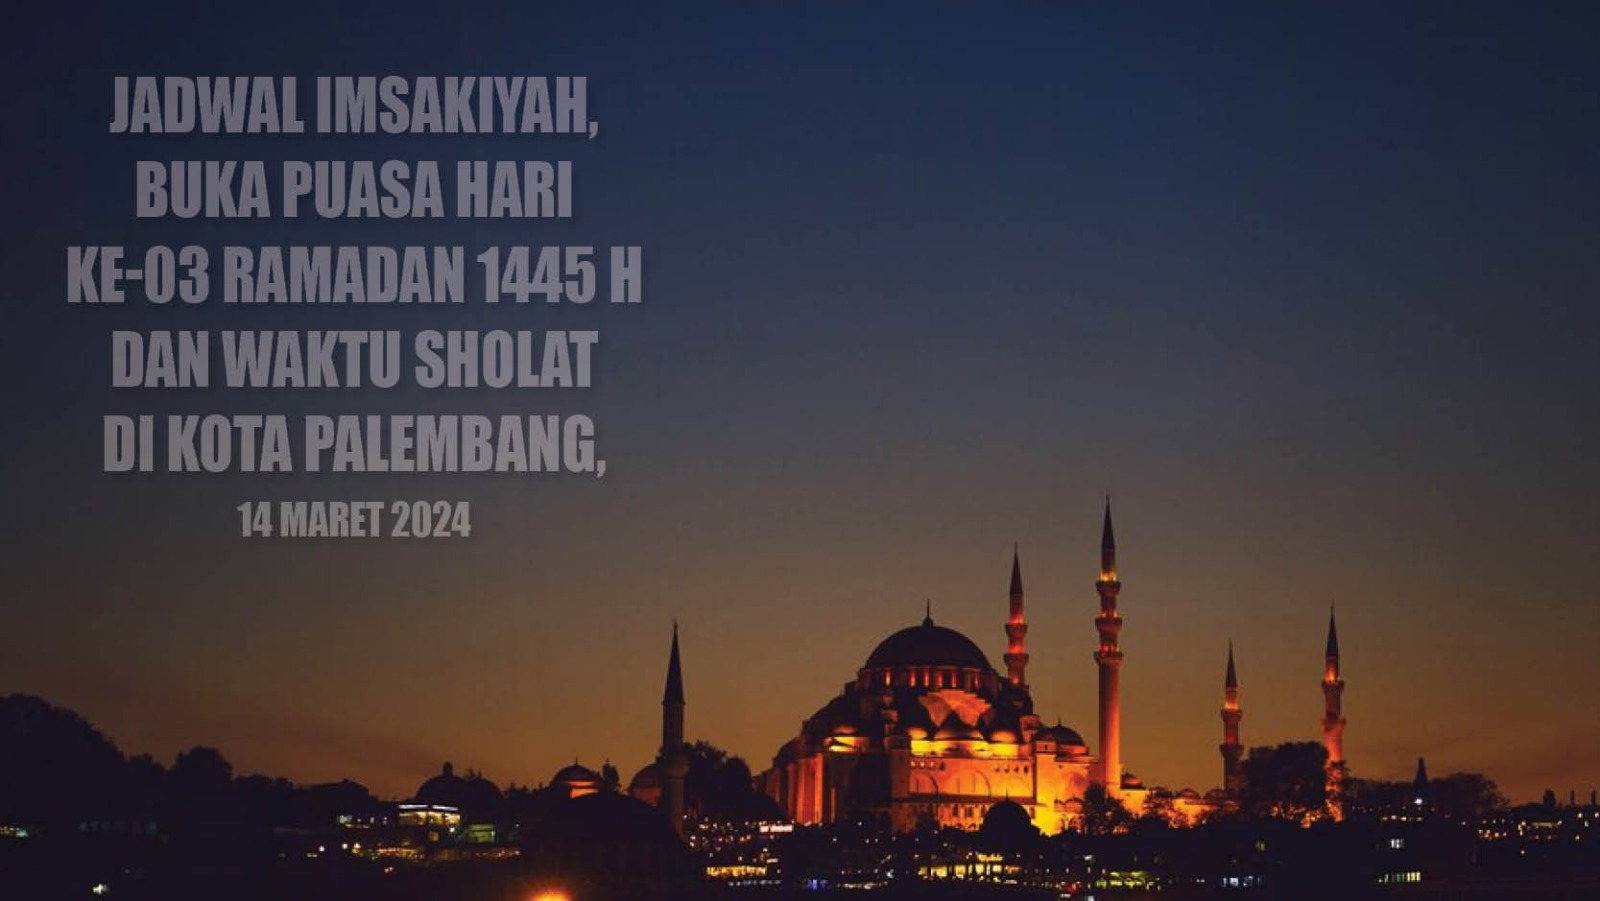 Terlengkap! Jadwal Imsakiyah dan Buka Puasa Hari ke-03 Ramadan 1445 H di Kota Palembang